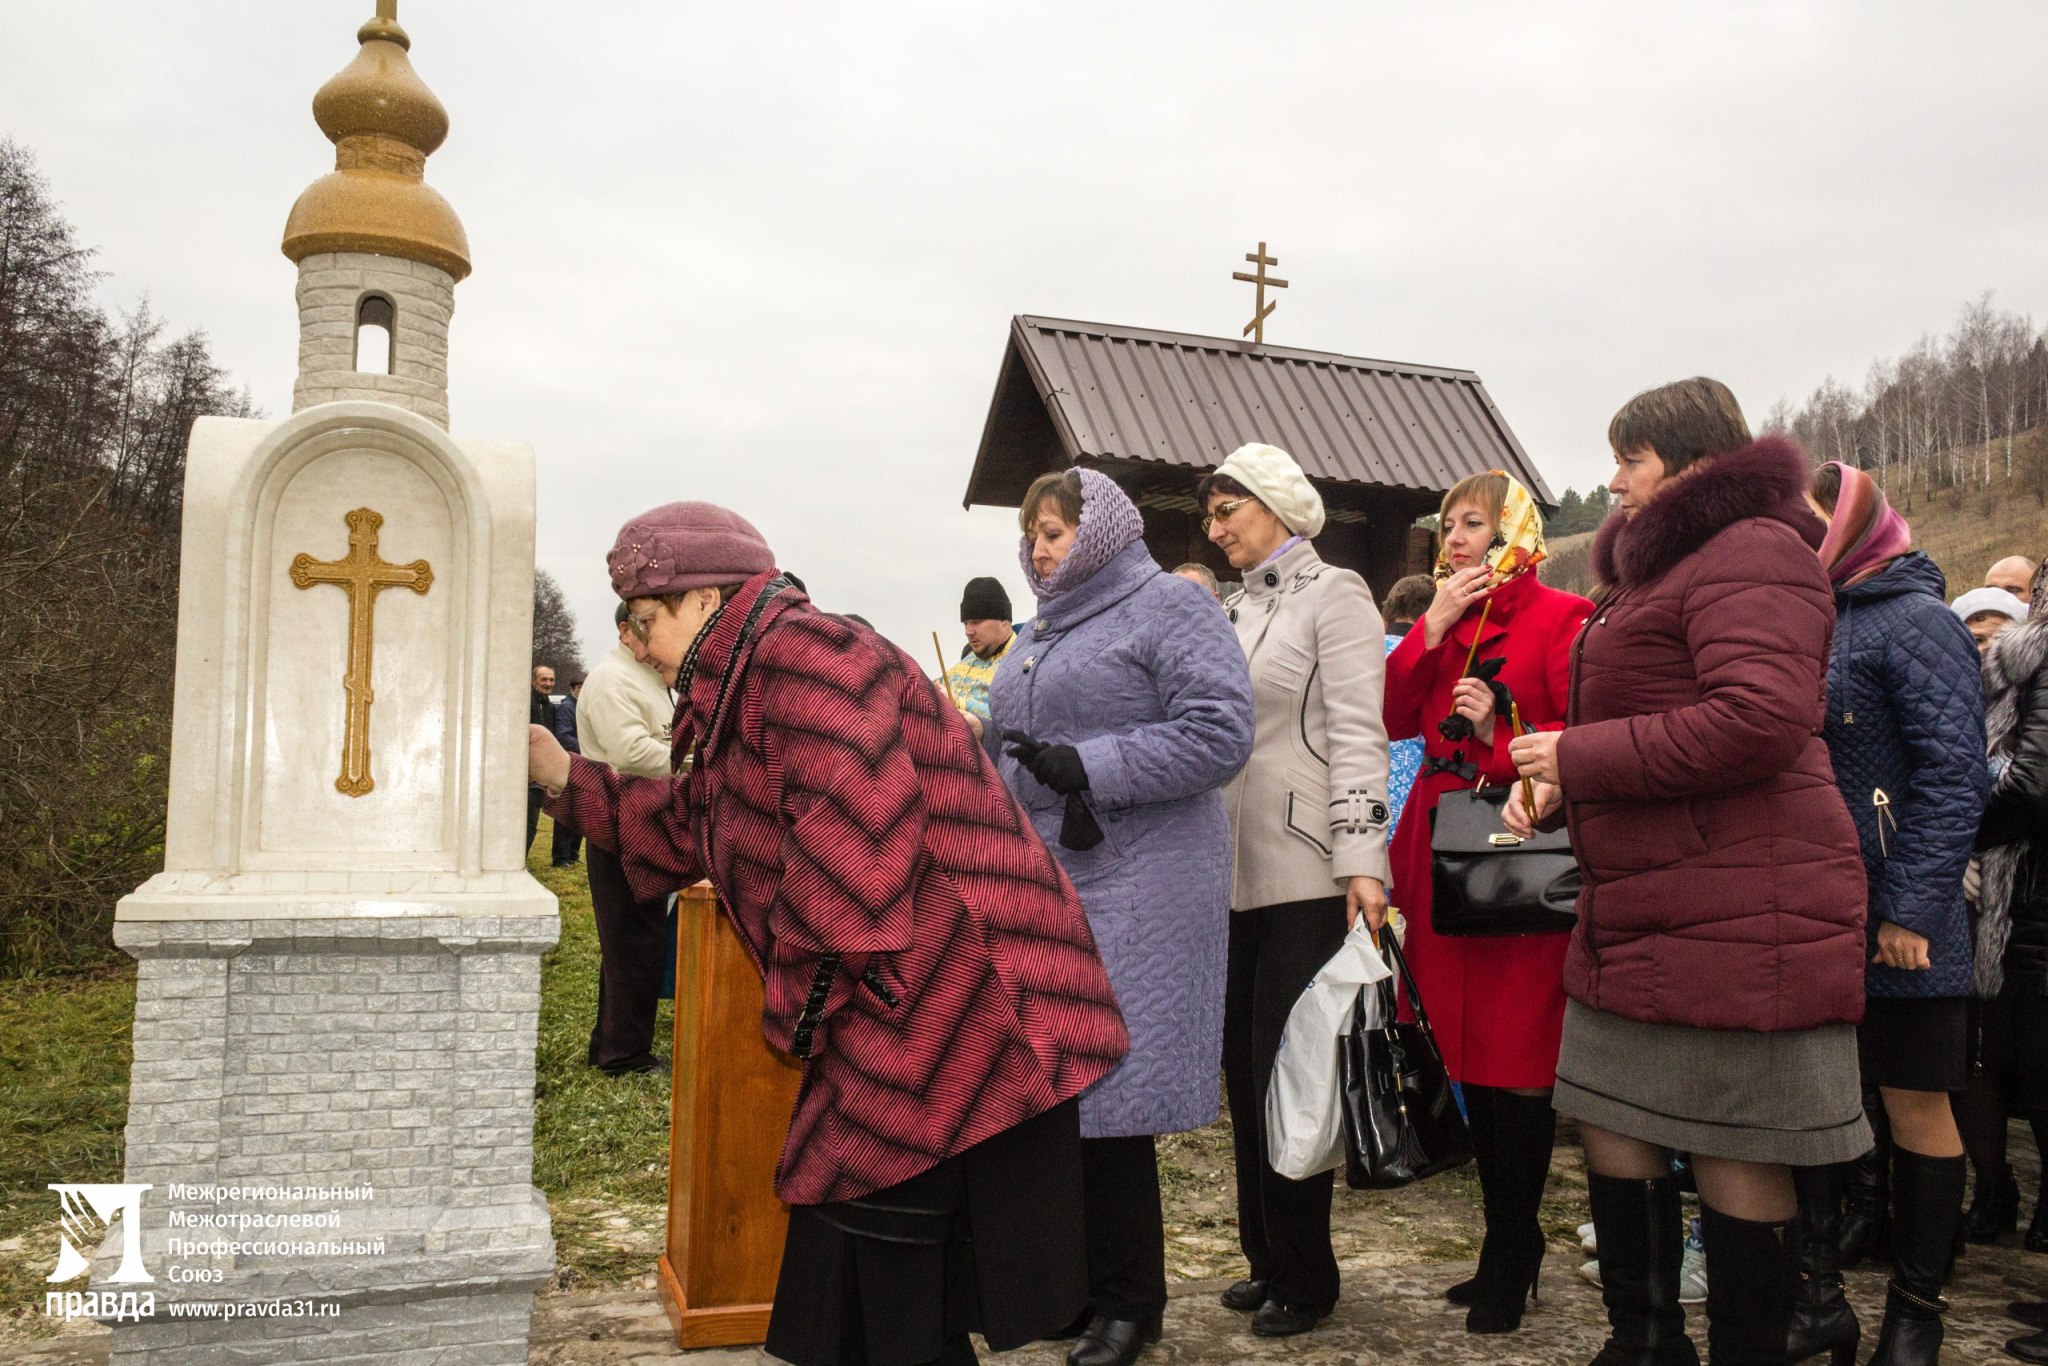 Белгородская митрополия и профсоюз «Правда» начали взаимодействие в сфере укрепления православных традиций на Белгородчине*